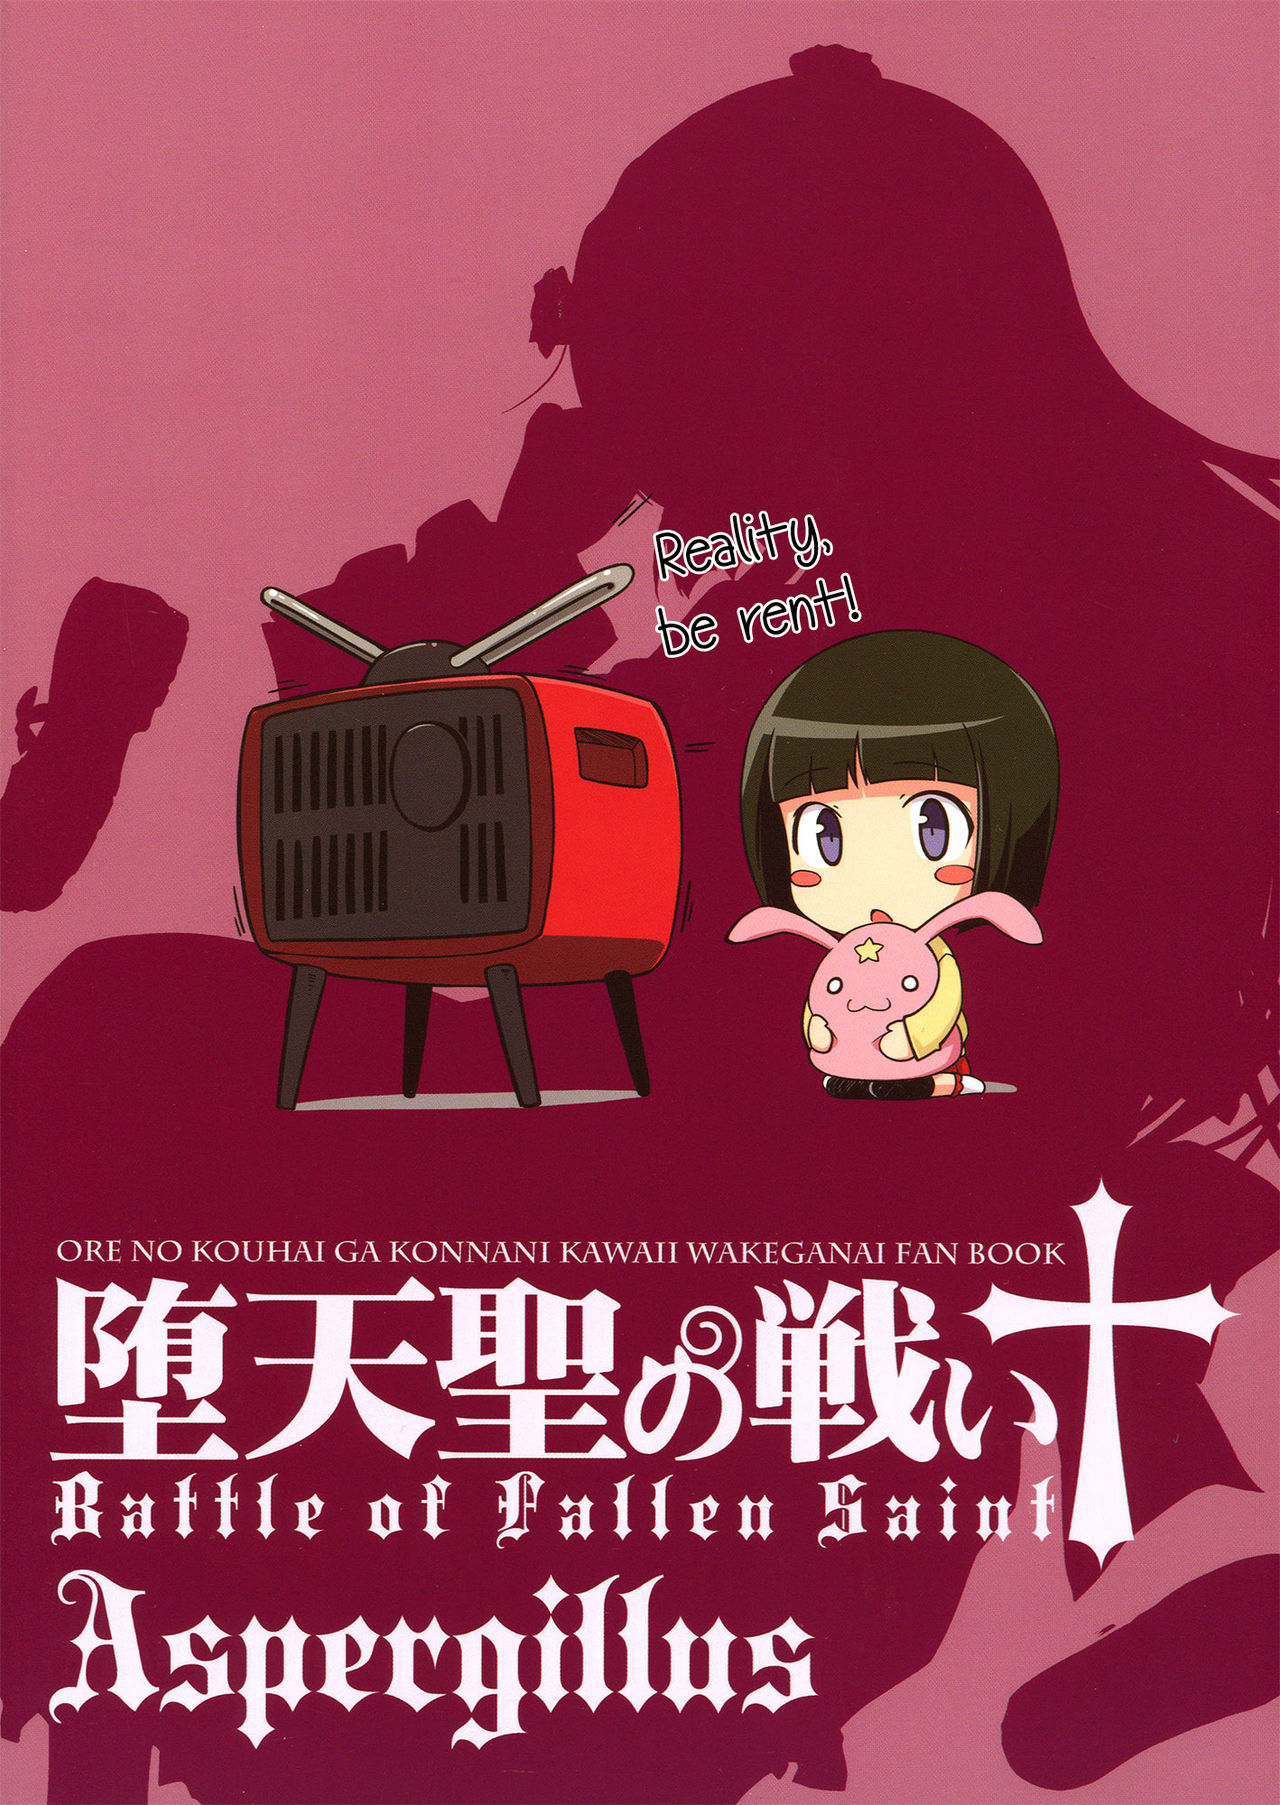 Datensei no Tatakai  Battle of Fallen Saint numero d'image 1